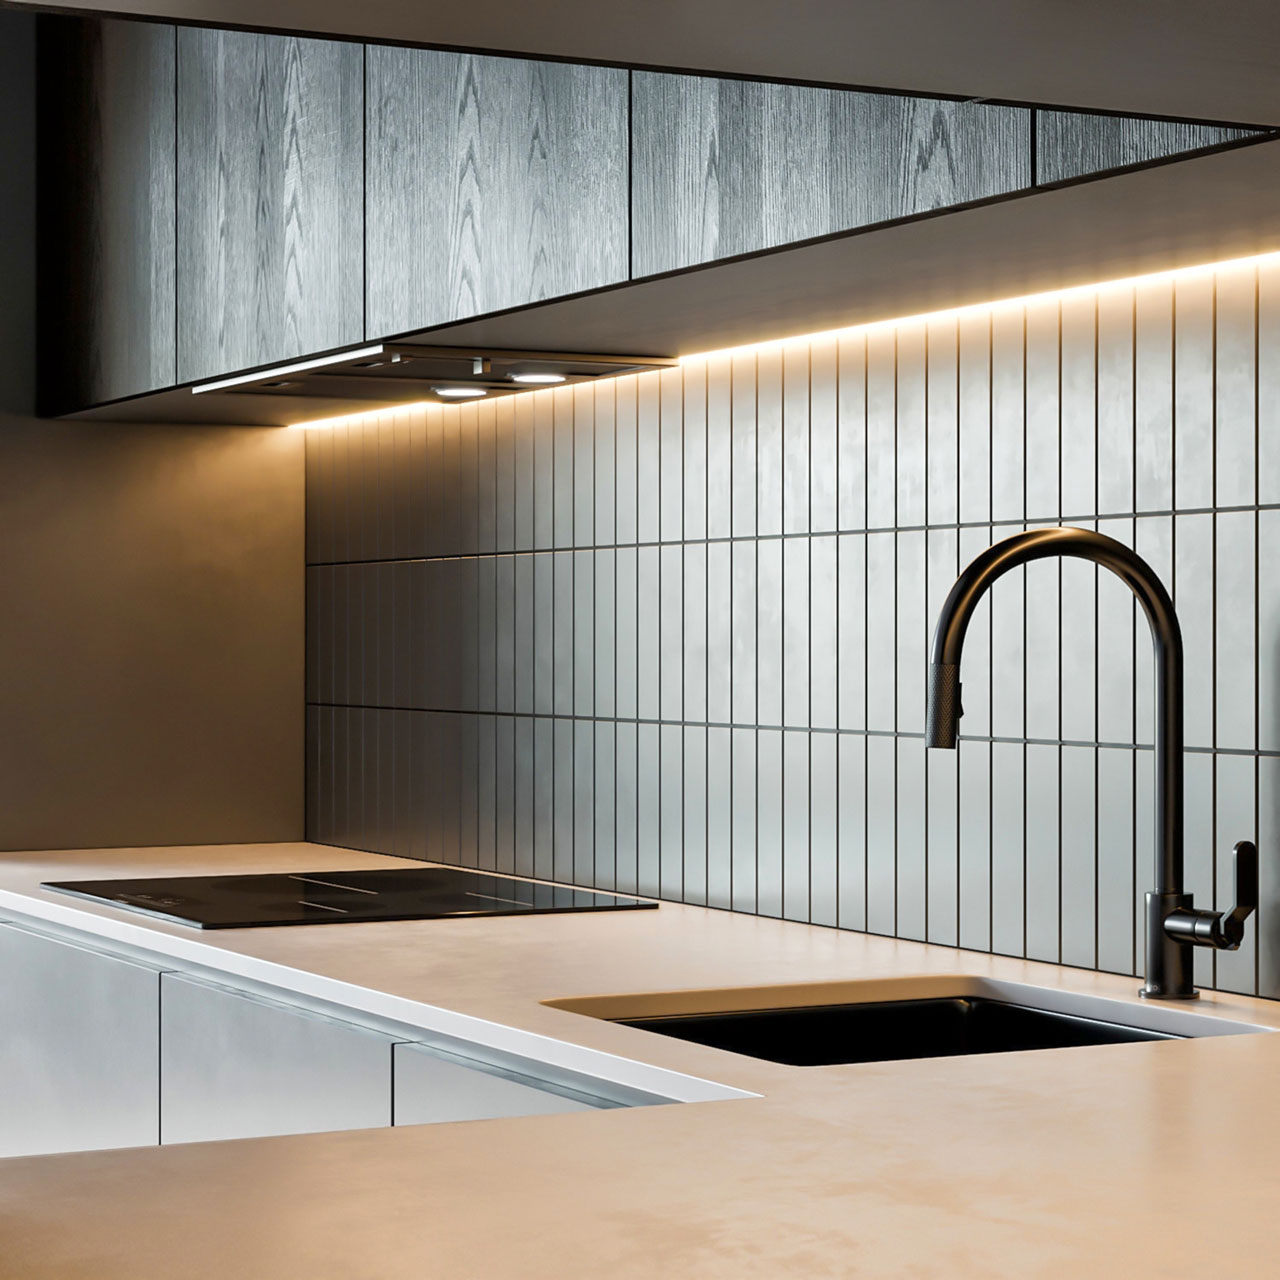 Kitchen Under Cabinet LED Strip Lights, Modern Kitchen Decor, Accent Lighting